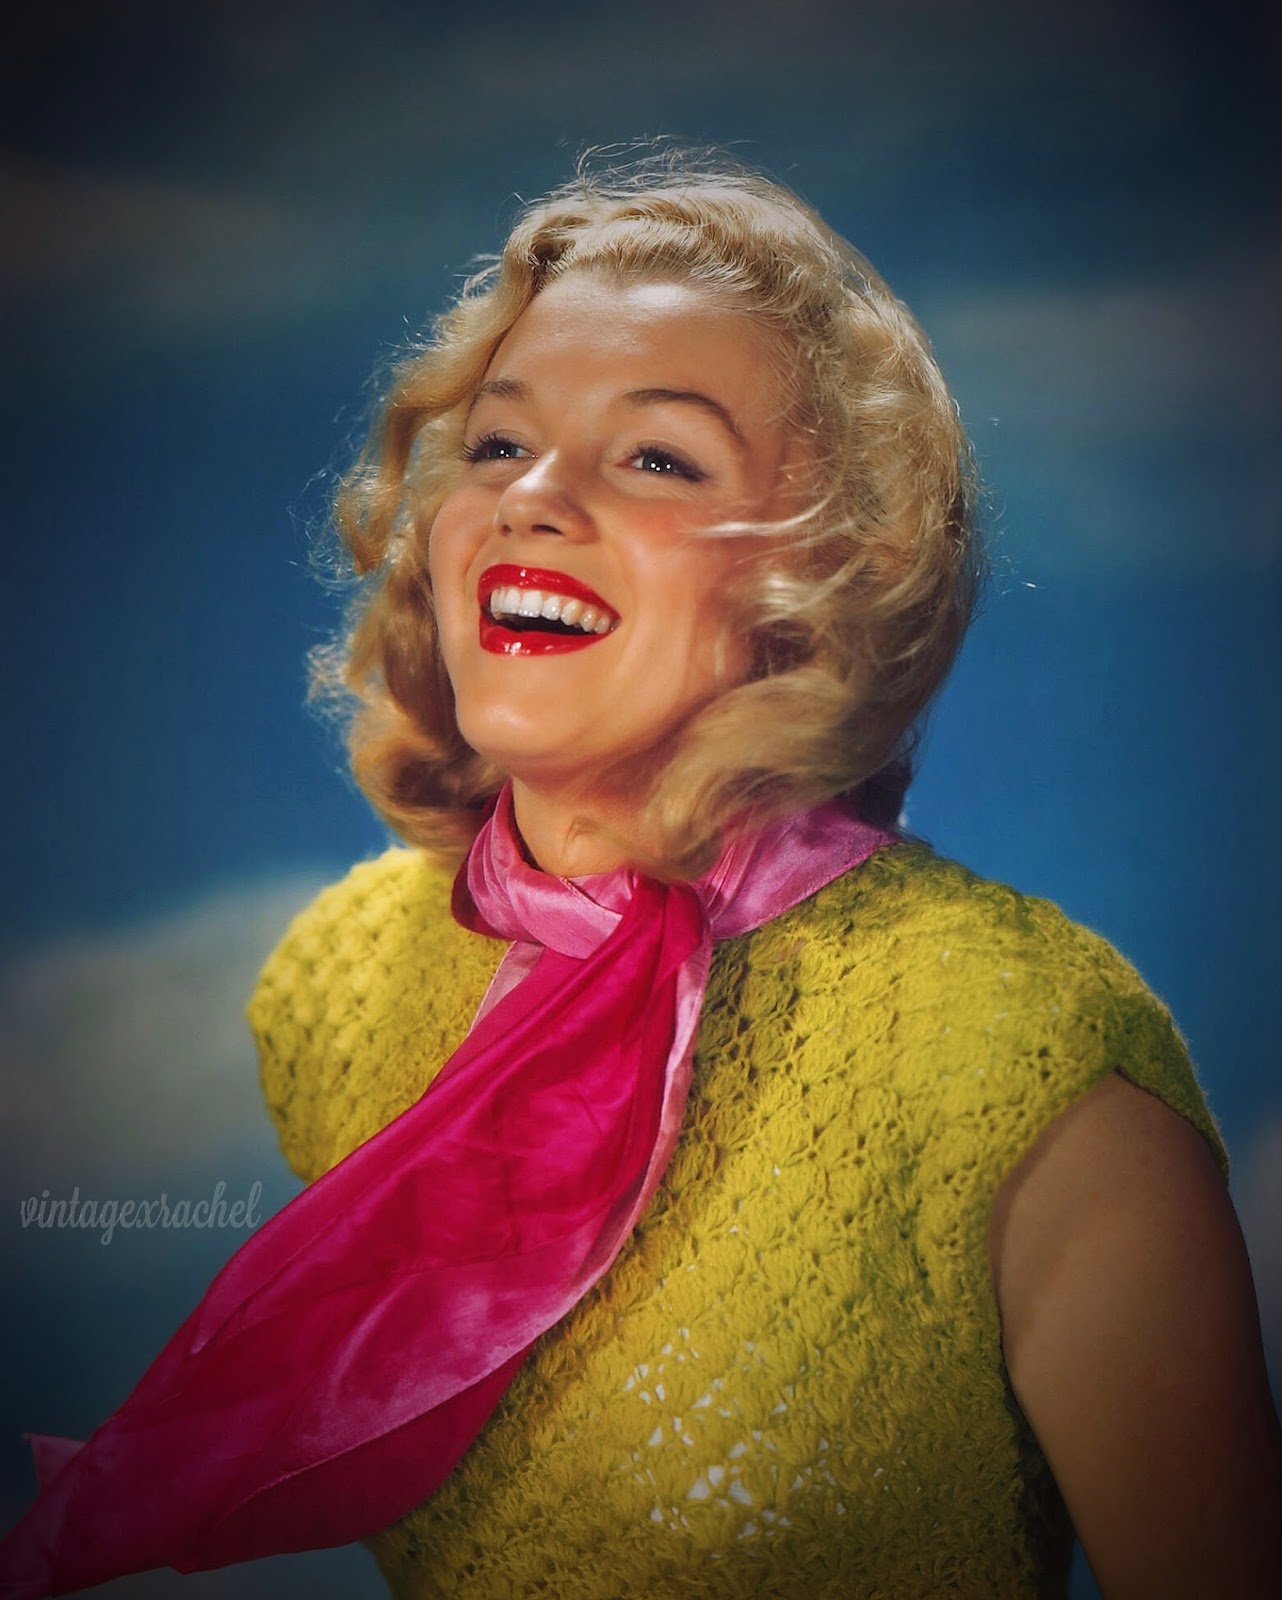 Vintage Rachel: Remembering Marilyn1282 x 1600